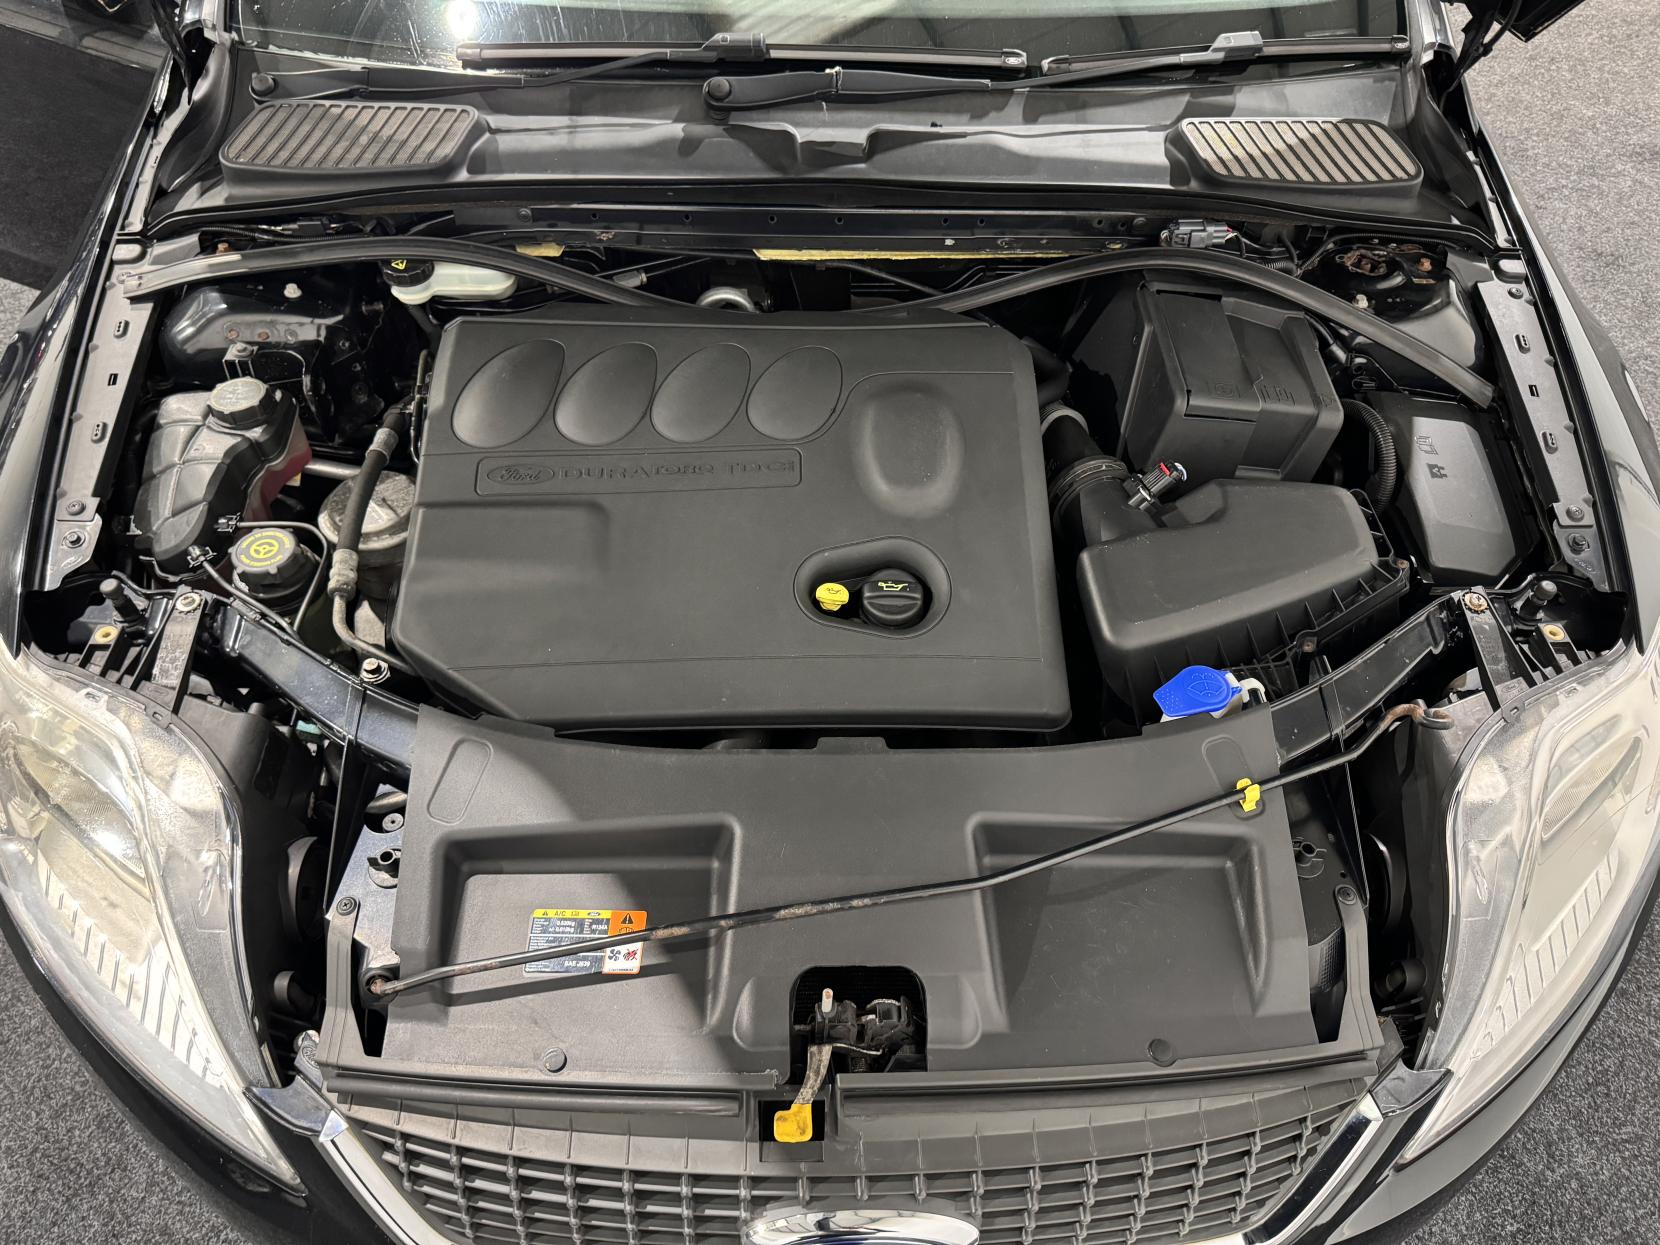 Ford Mondeo 2.0 TDCi Zetec Hatchback 5dr Diesel Manual (154 g/km, 138 bhp)